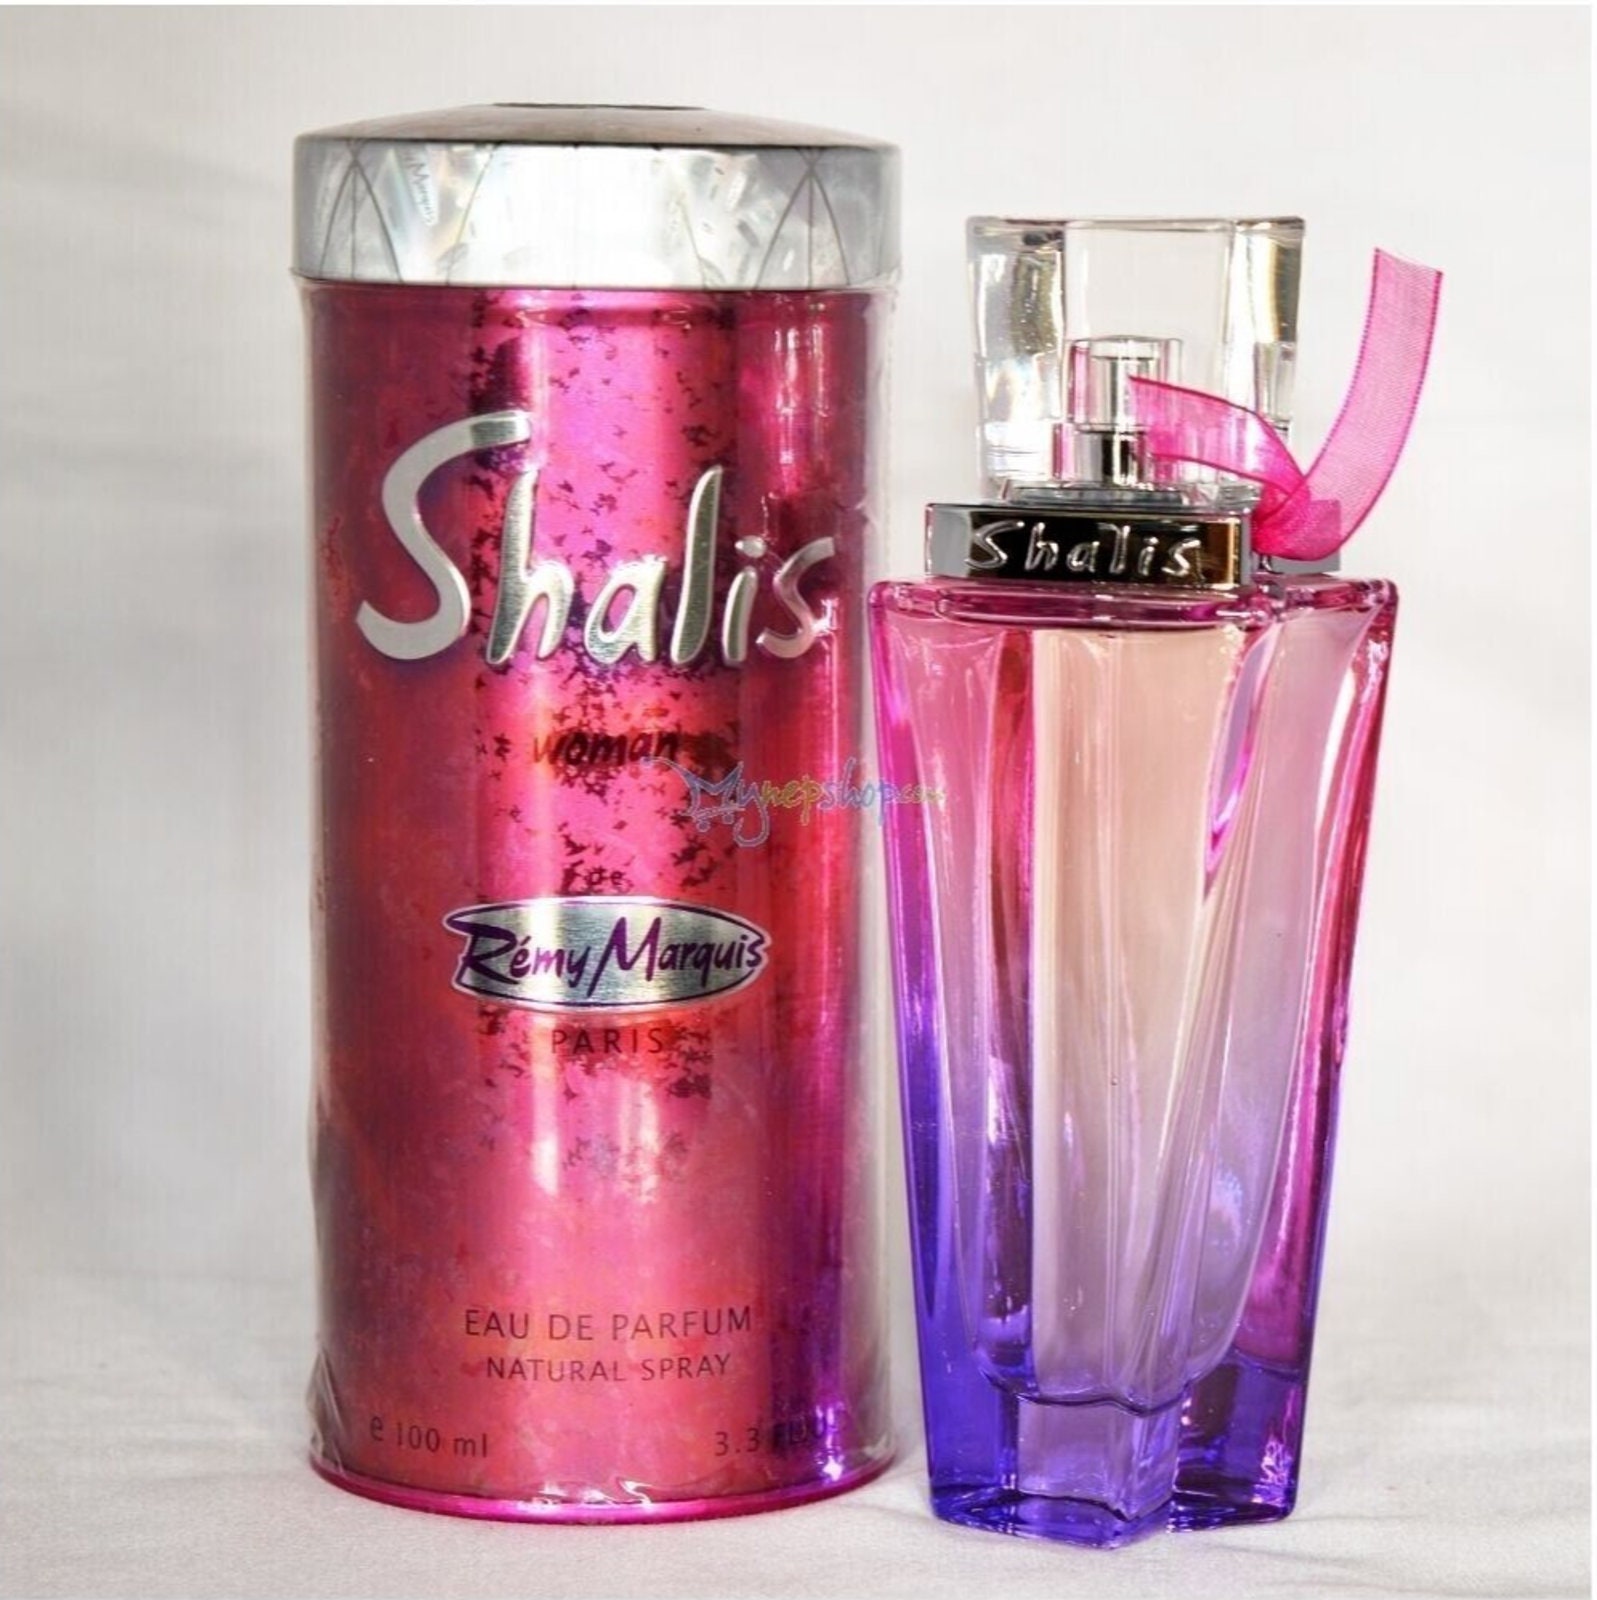 Shalis by Remy Marquis 3.3 oz Eau de Parfum Spray for Women